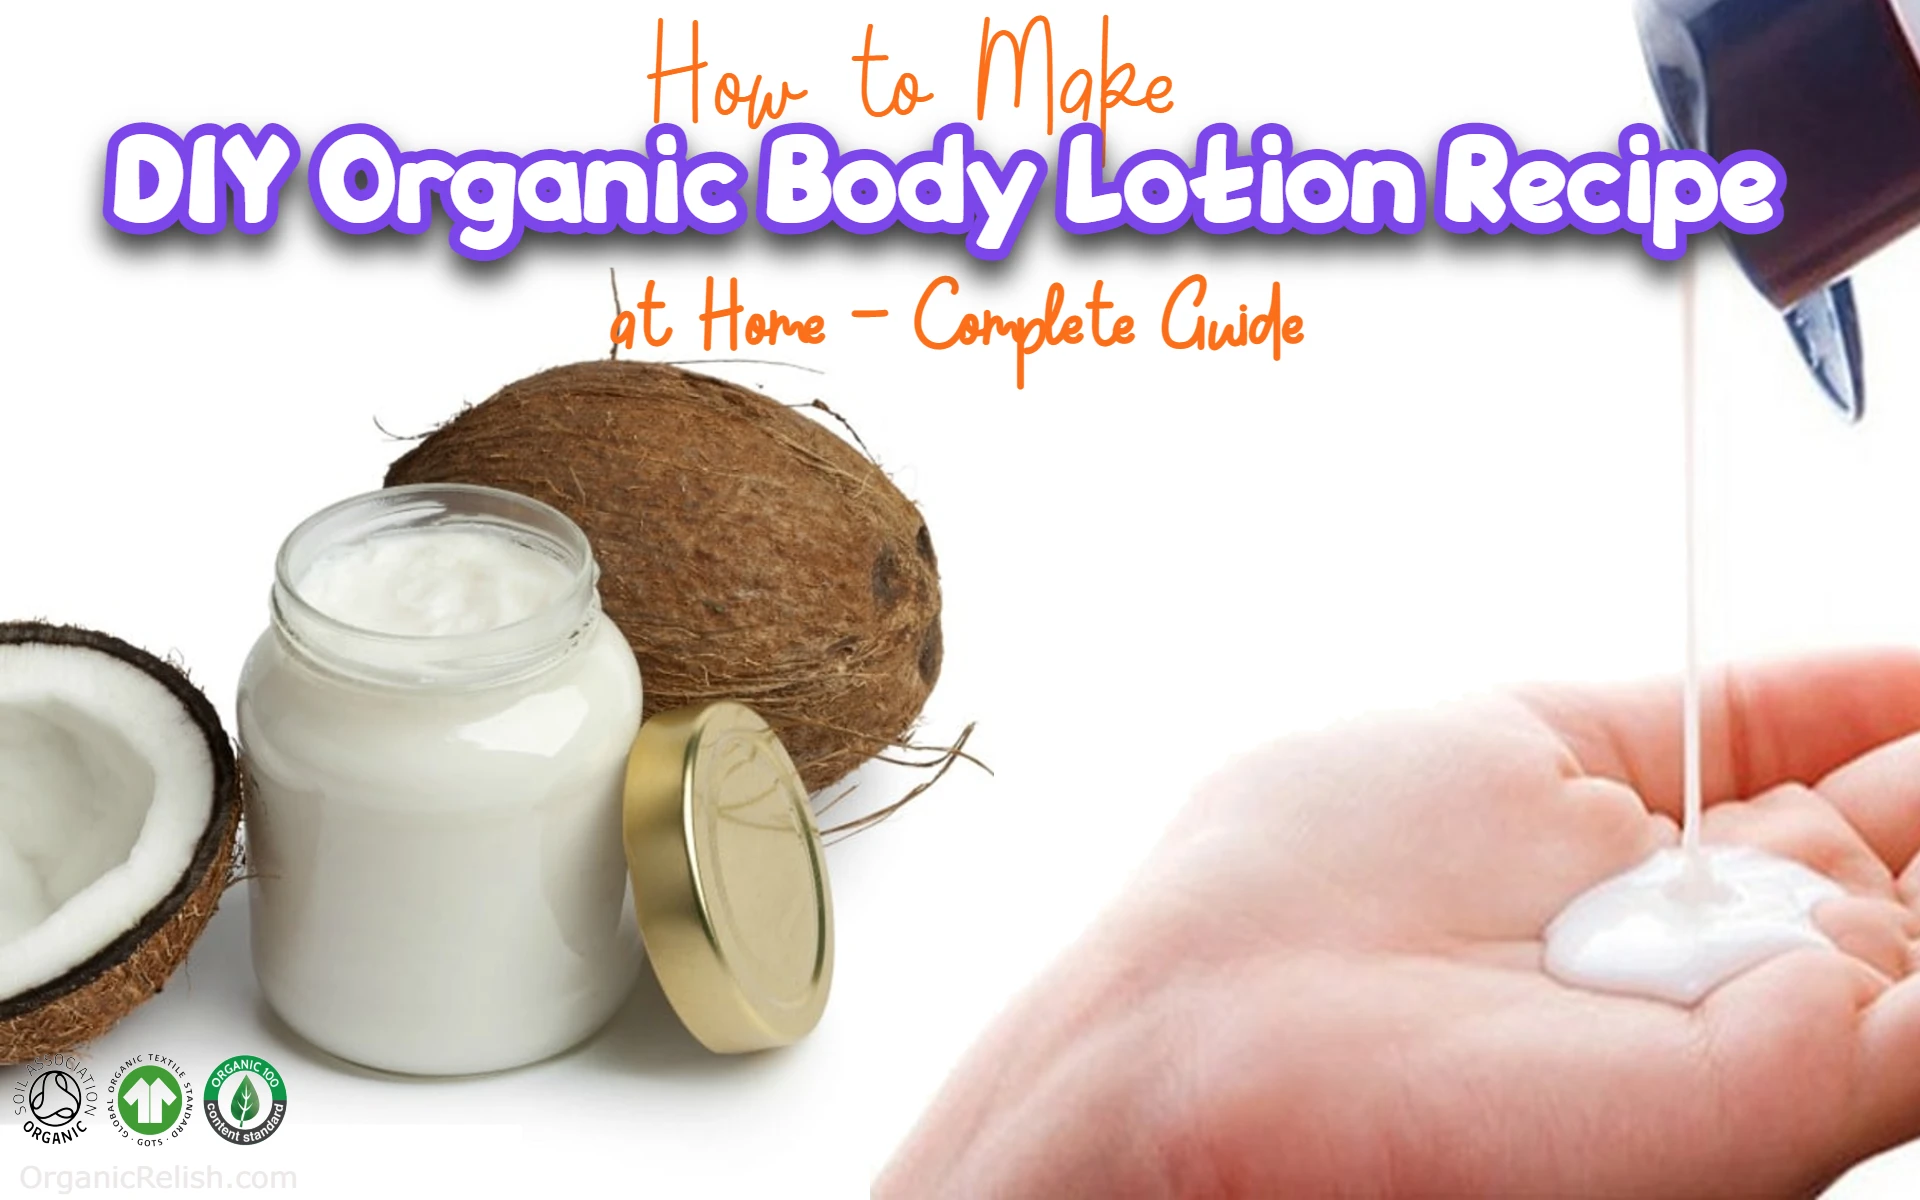 DIY Organic Body Lotion Recipe